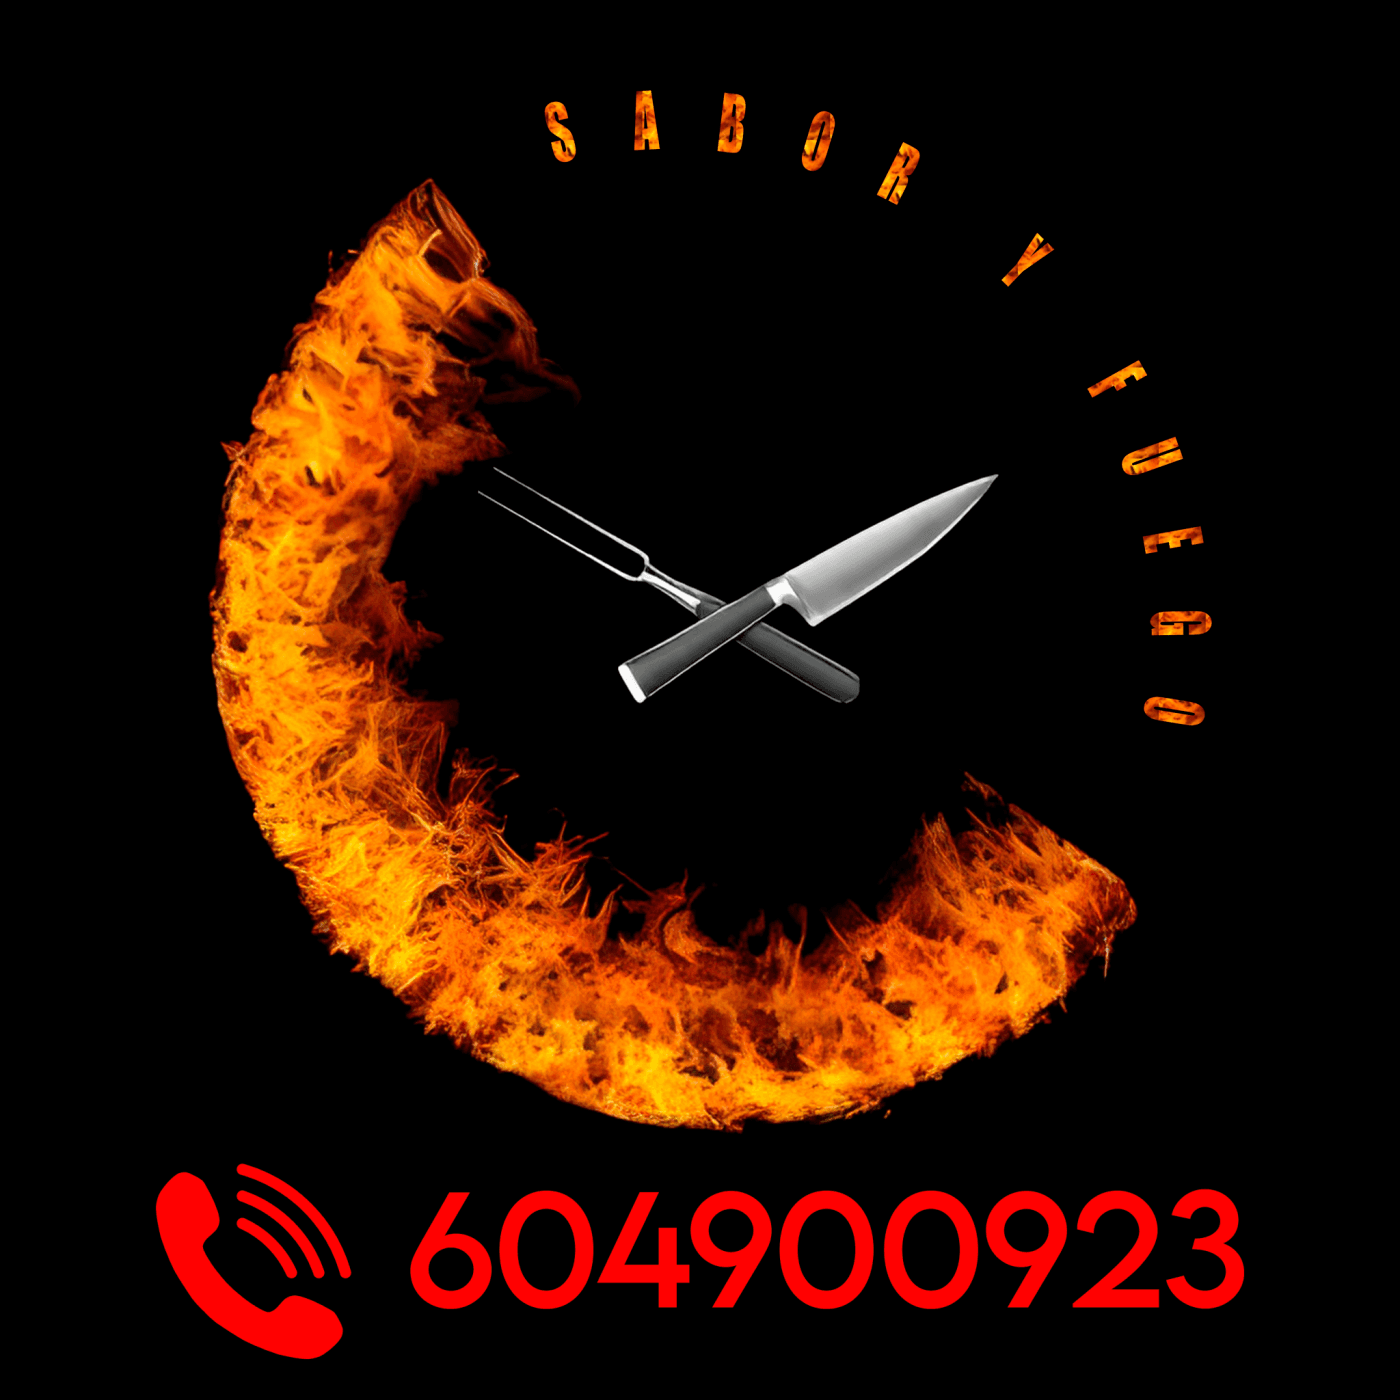 Sabor Y Fuego Logo Con Numero Fondo Negro (1)